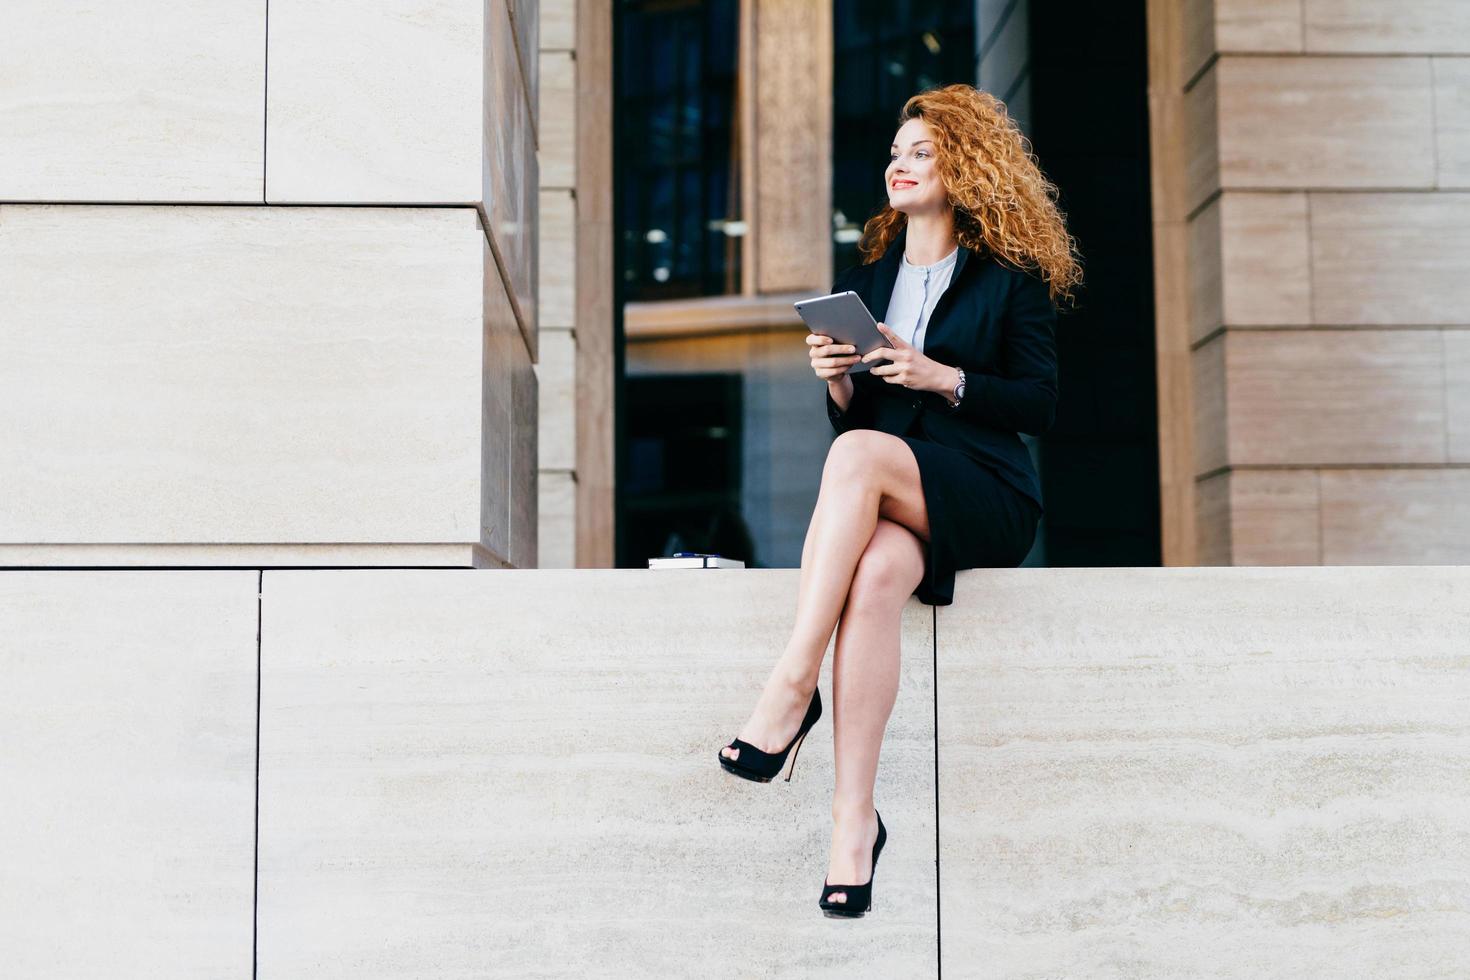 retrato de mulher linda elegante de terno preto e sapatos de salto alto com pernas longas e esbeltas, sentado com tablet moderno, olhando de lado com expressão feliz. trabalhadora de escritório feminina posando ao ar livre foto